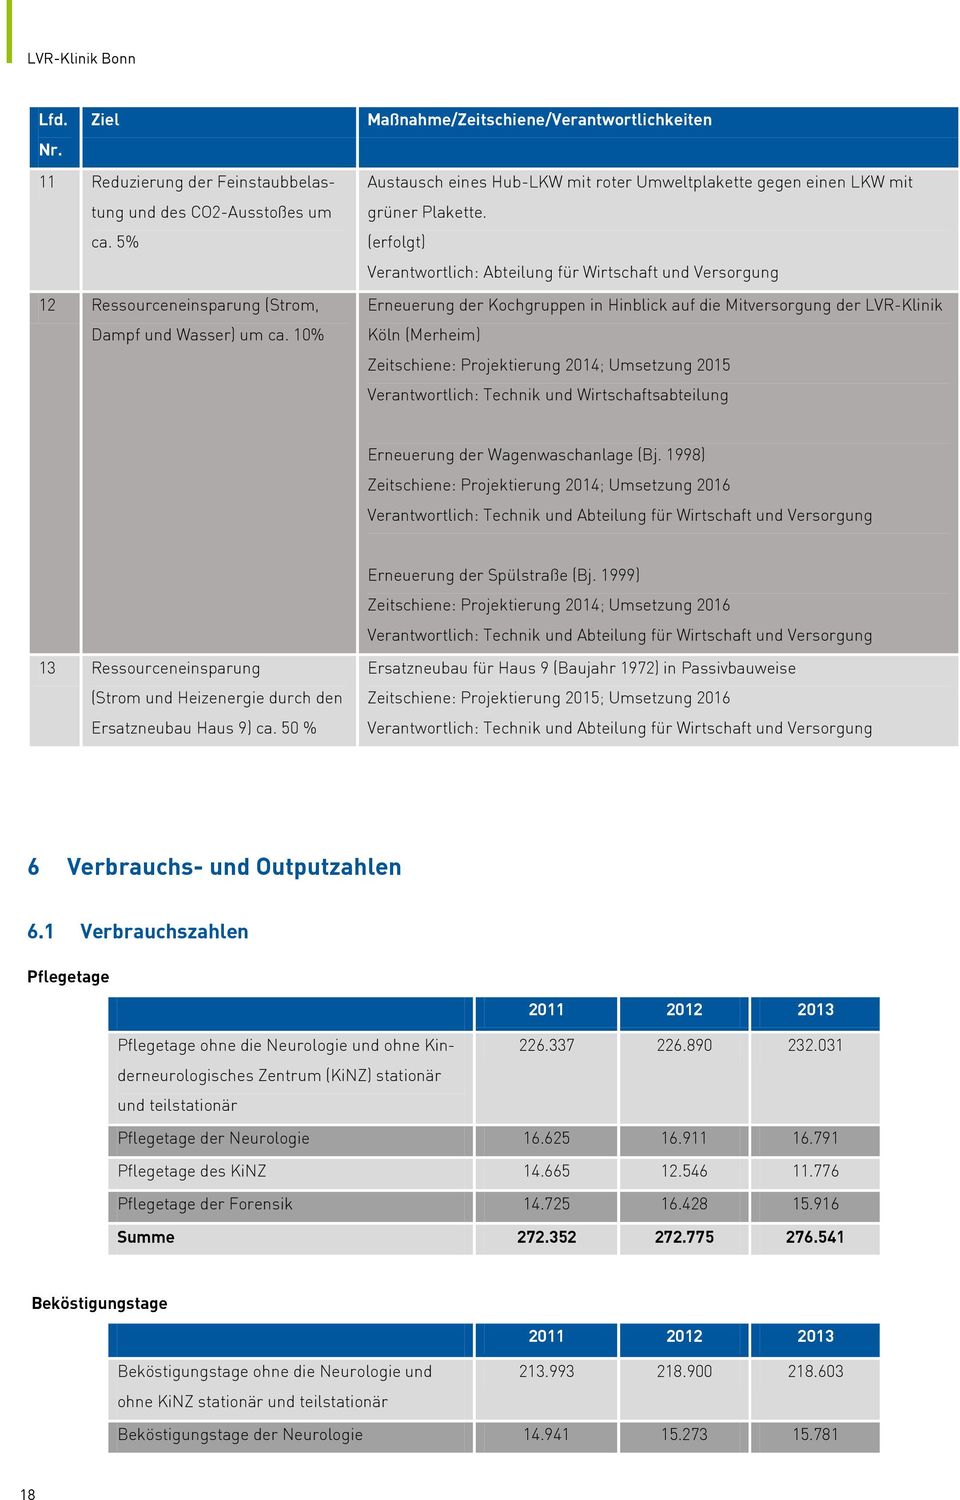 (erfolgt) Verantwortlich: Abteilung für Wirtschaft und Versorgung Erneuerung der Kochgruppen in Hinblick auf die Mitversorgung der LVR-Klinik Köln (Merheim) Zeitschiene: Projektierung 2014; Umsetzung